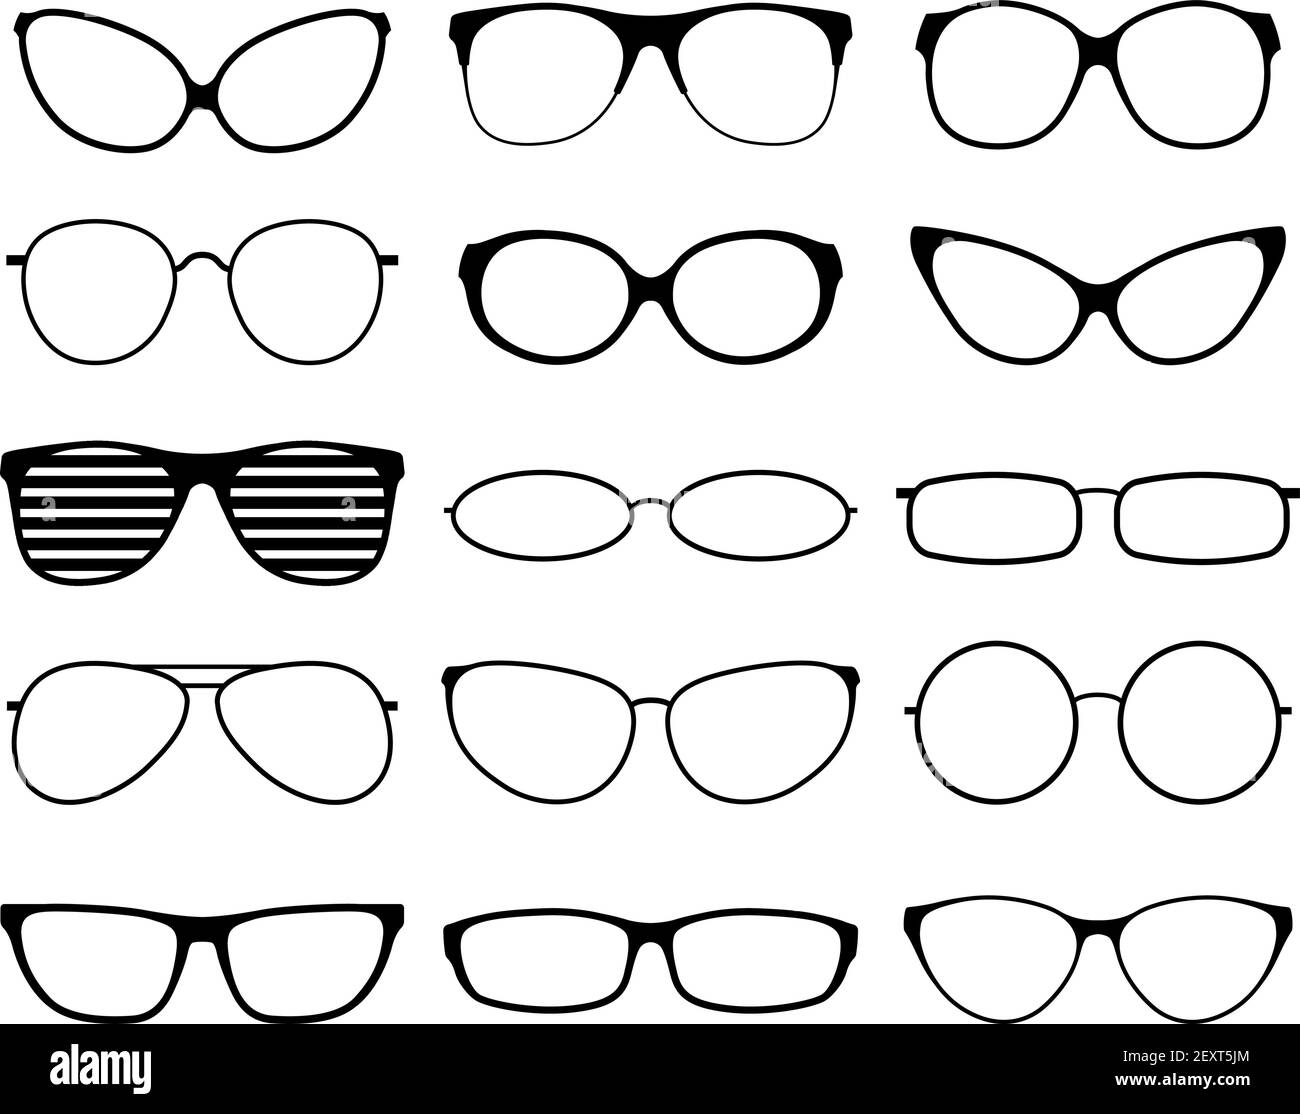 Gafas siluetas. Moda gafas de sol marcos, gafas negras. Geek y hipopótamos. Hombre mujer gafas. Iconos vectoriales conjunto de lentes de vista, ilustración del borde de los anteojos Imagen Vector de